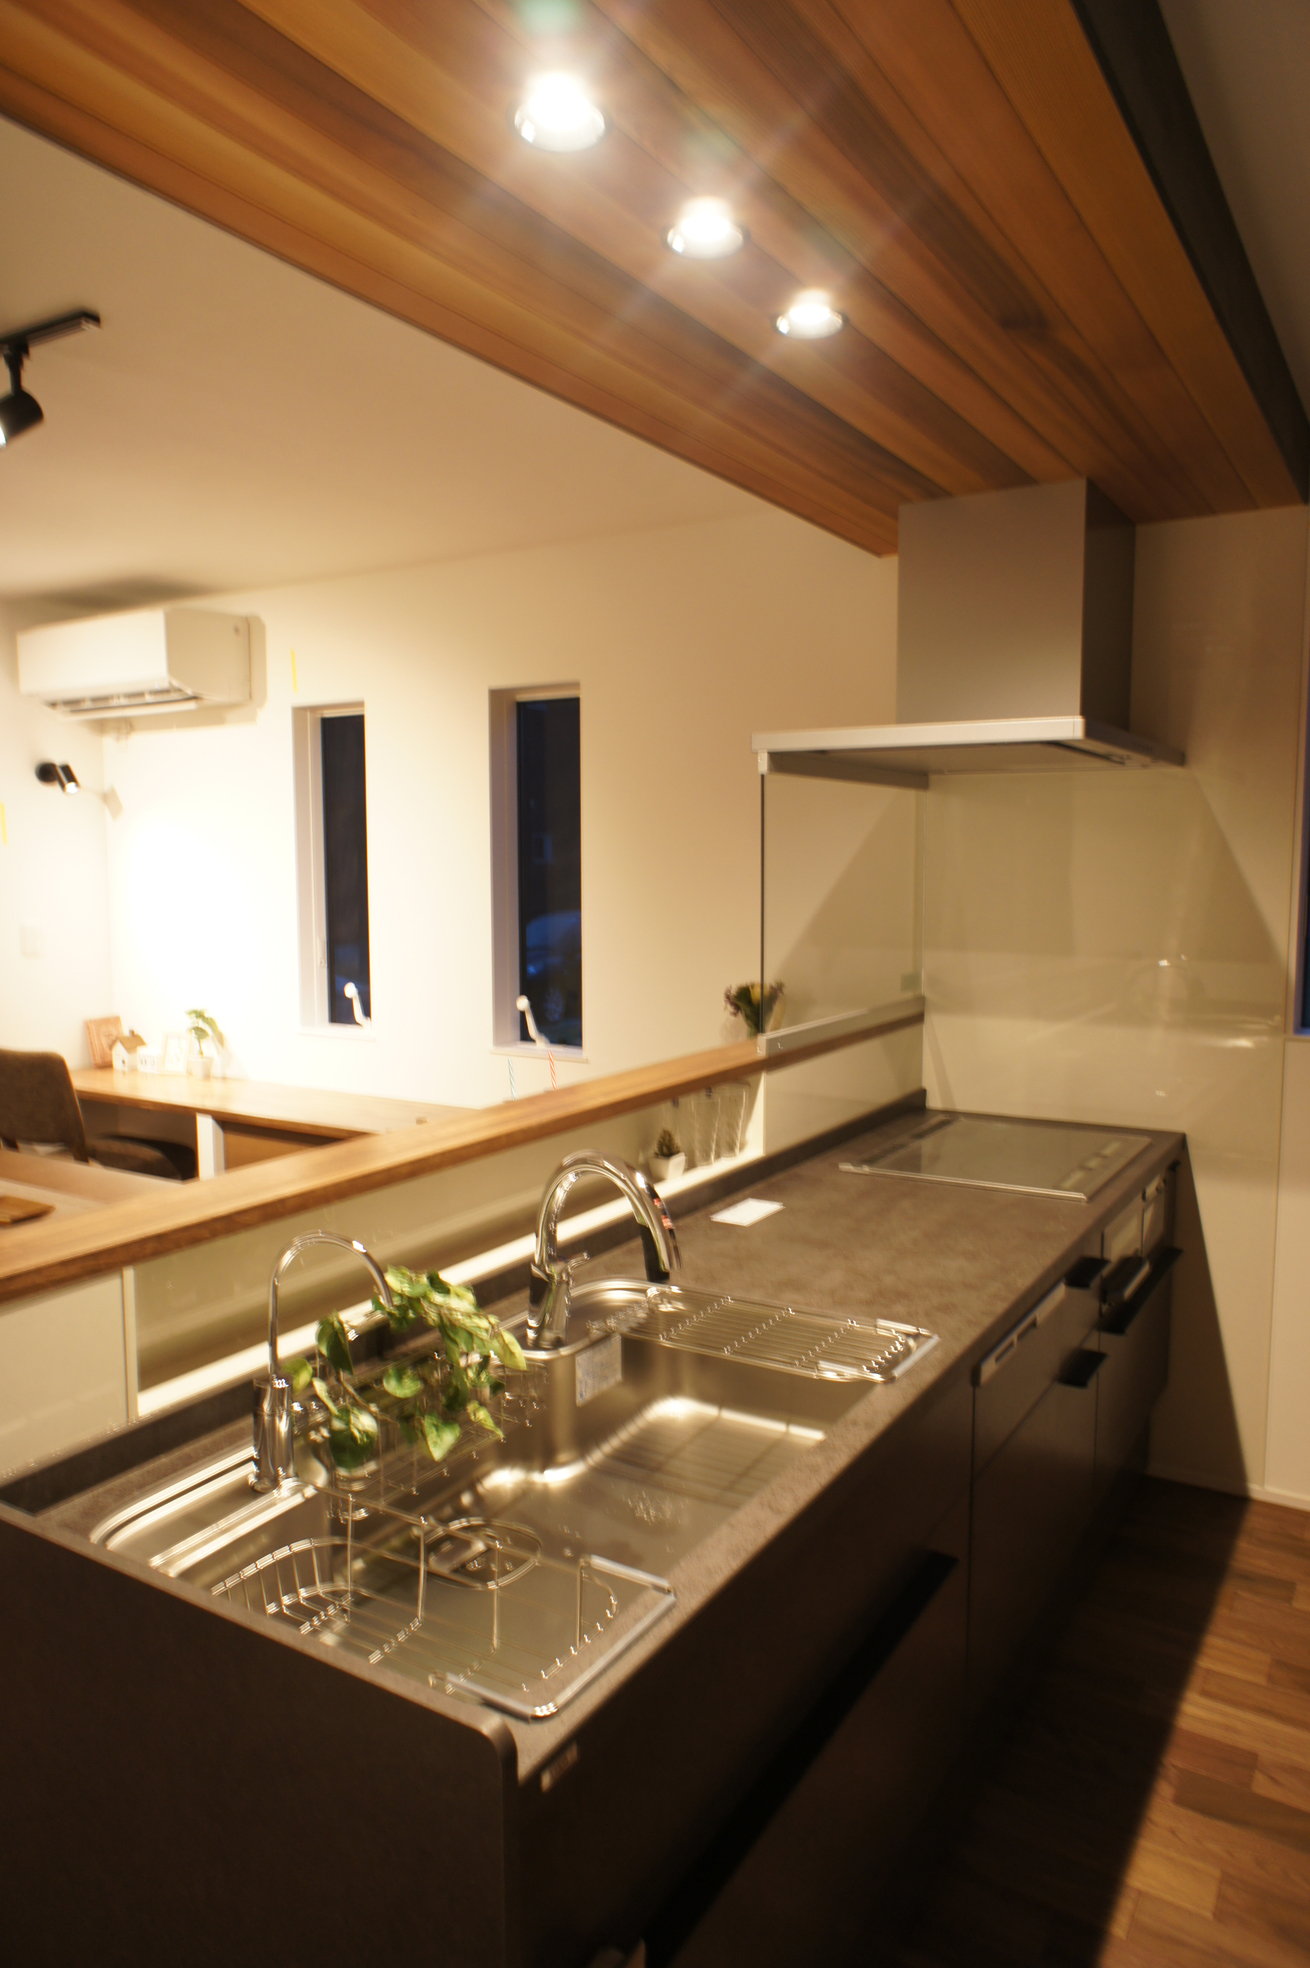 キッチン天板はLIXILの高級セラミック天板を採用。
ブラックのキッチン上の天井にはアクセントにレッドシダーを。